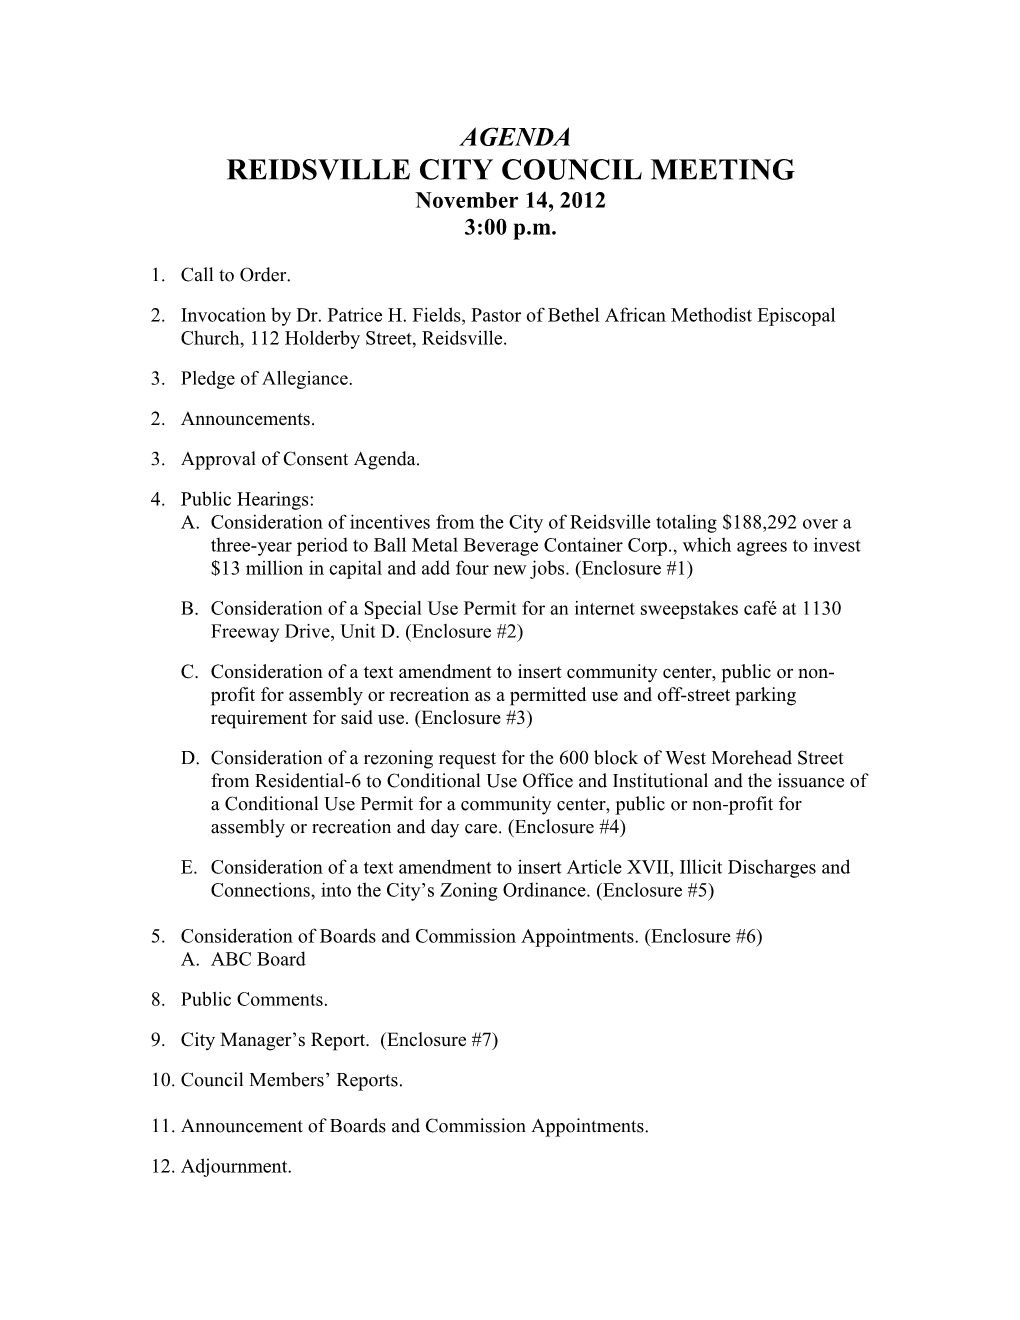 Reidsville City Council Meeting